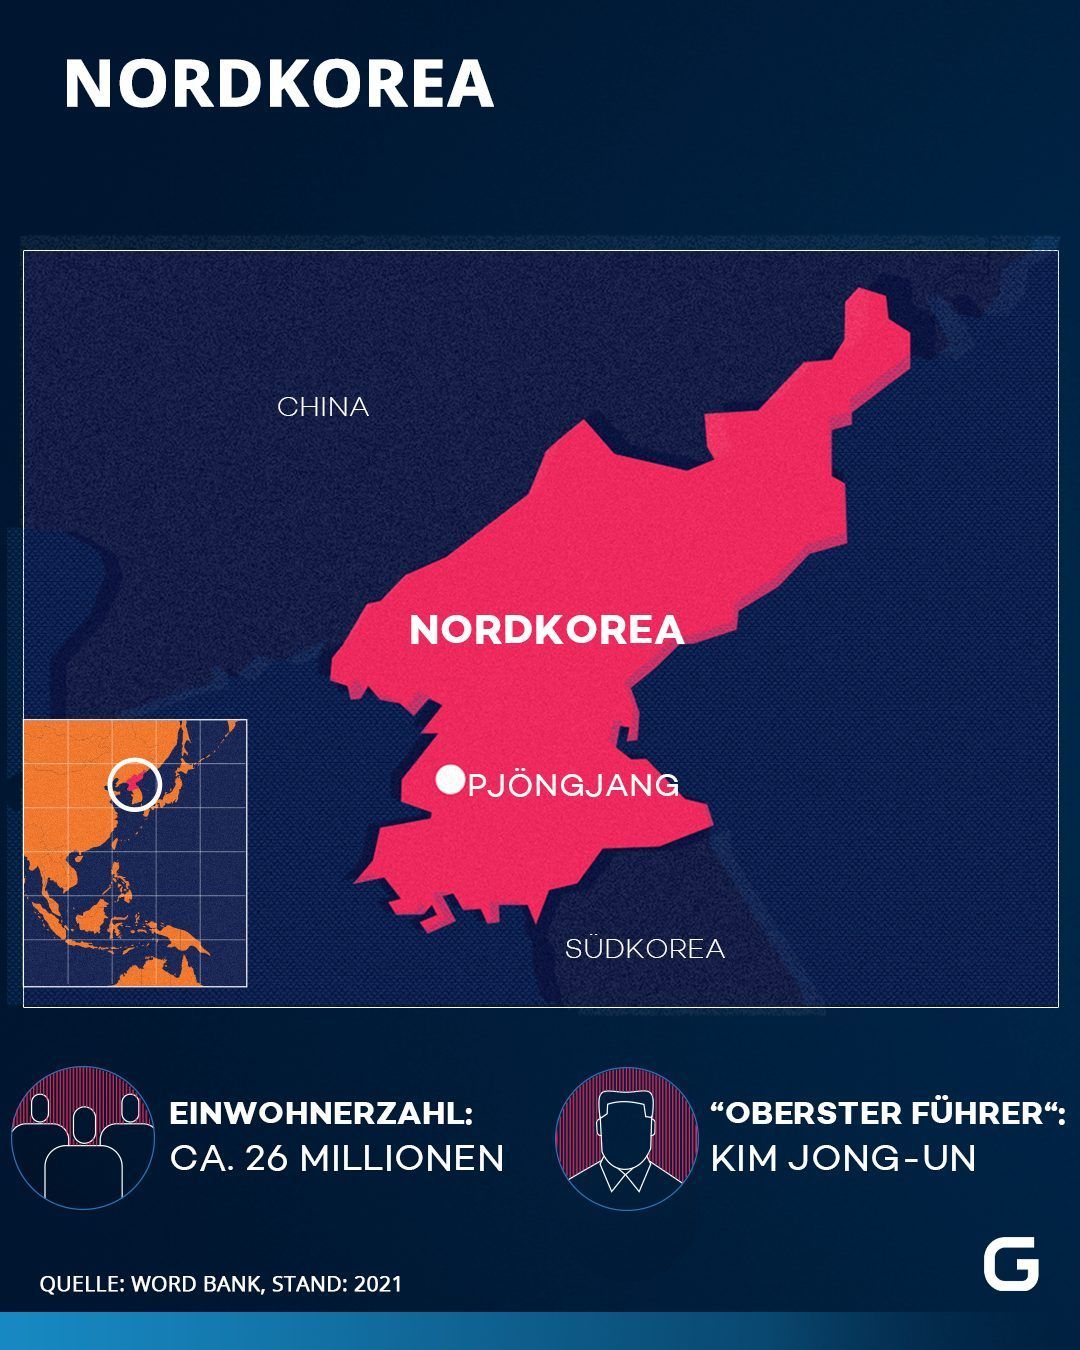 Nordkorea: Lage, Einwohnerzahl und Anführer des Landes